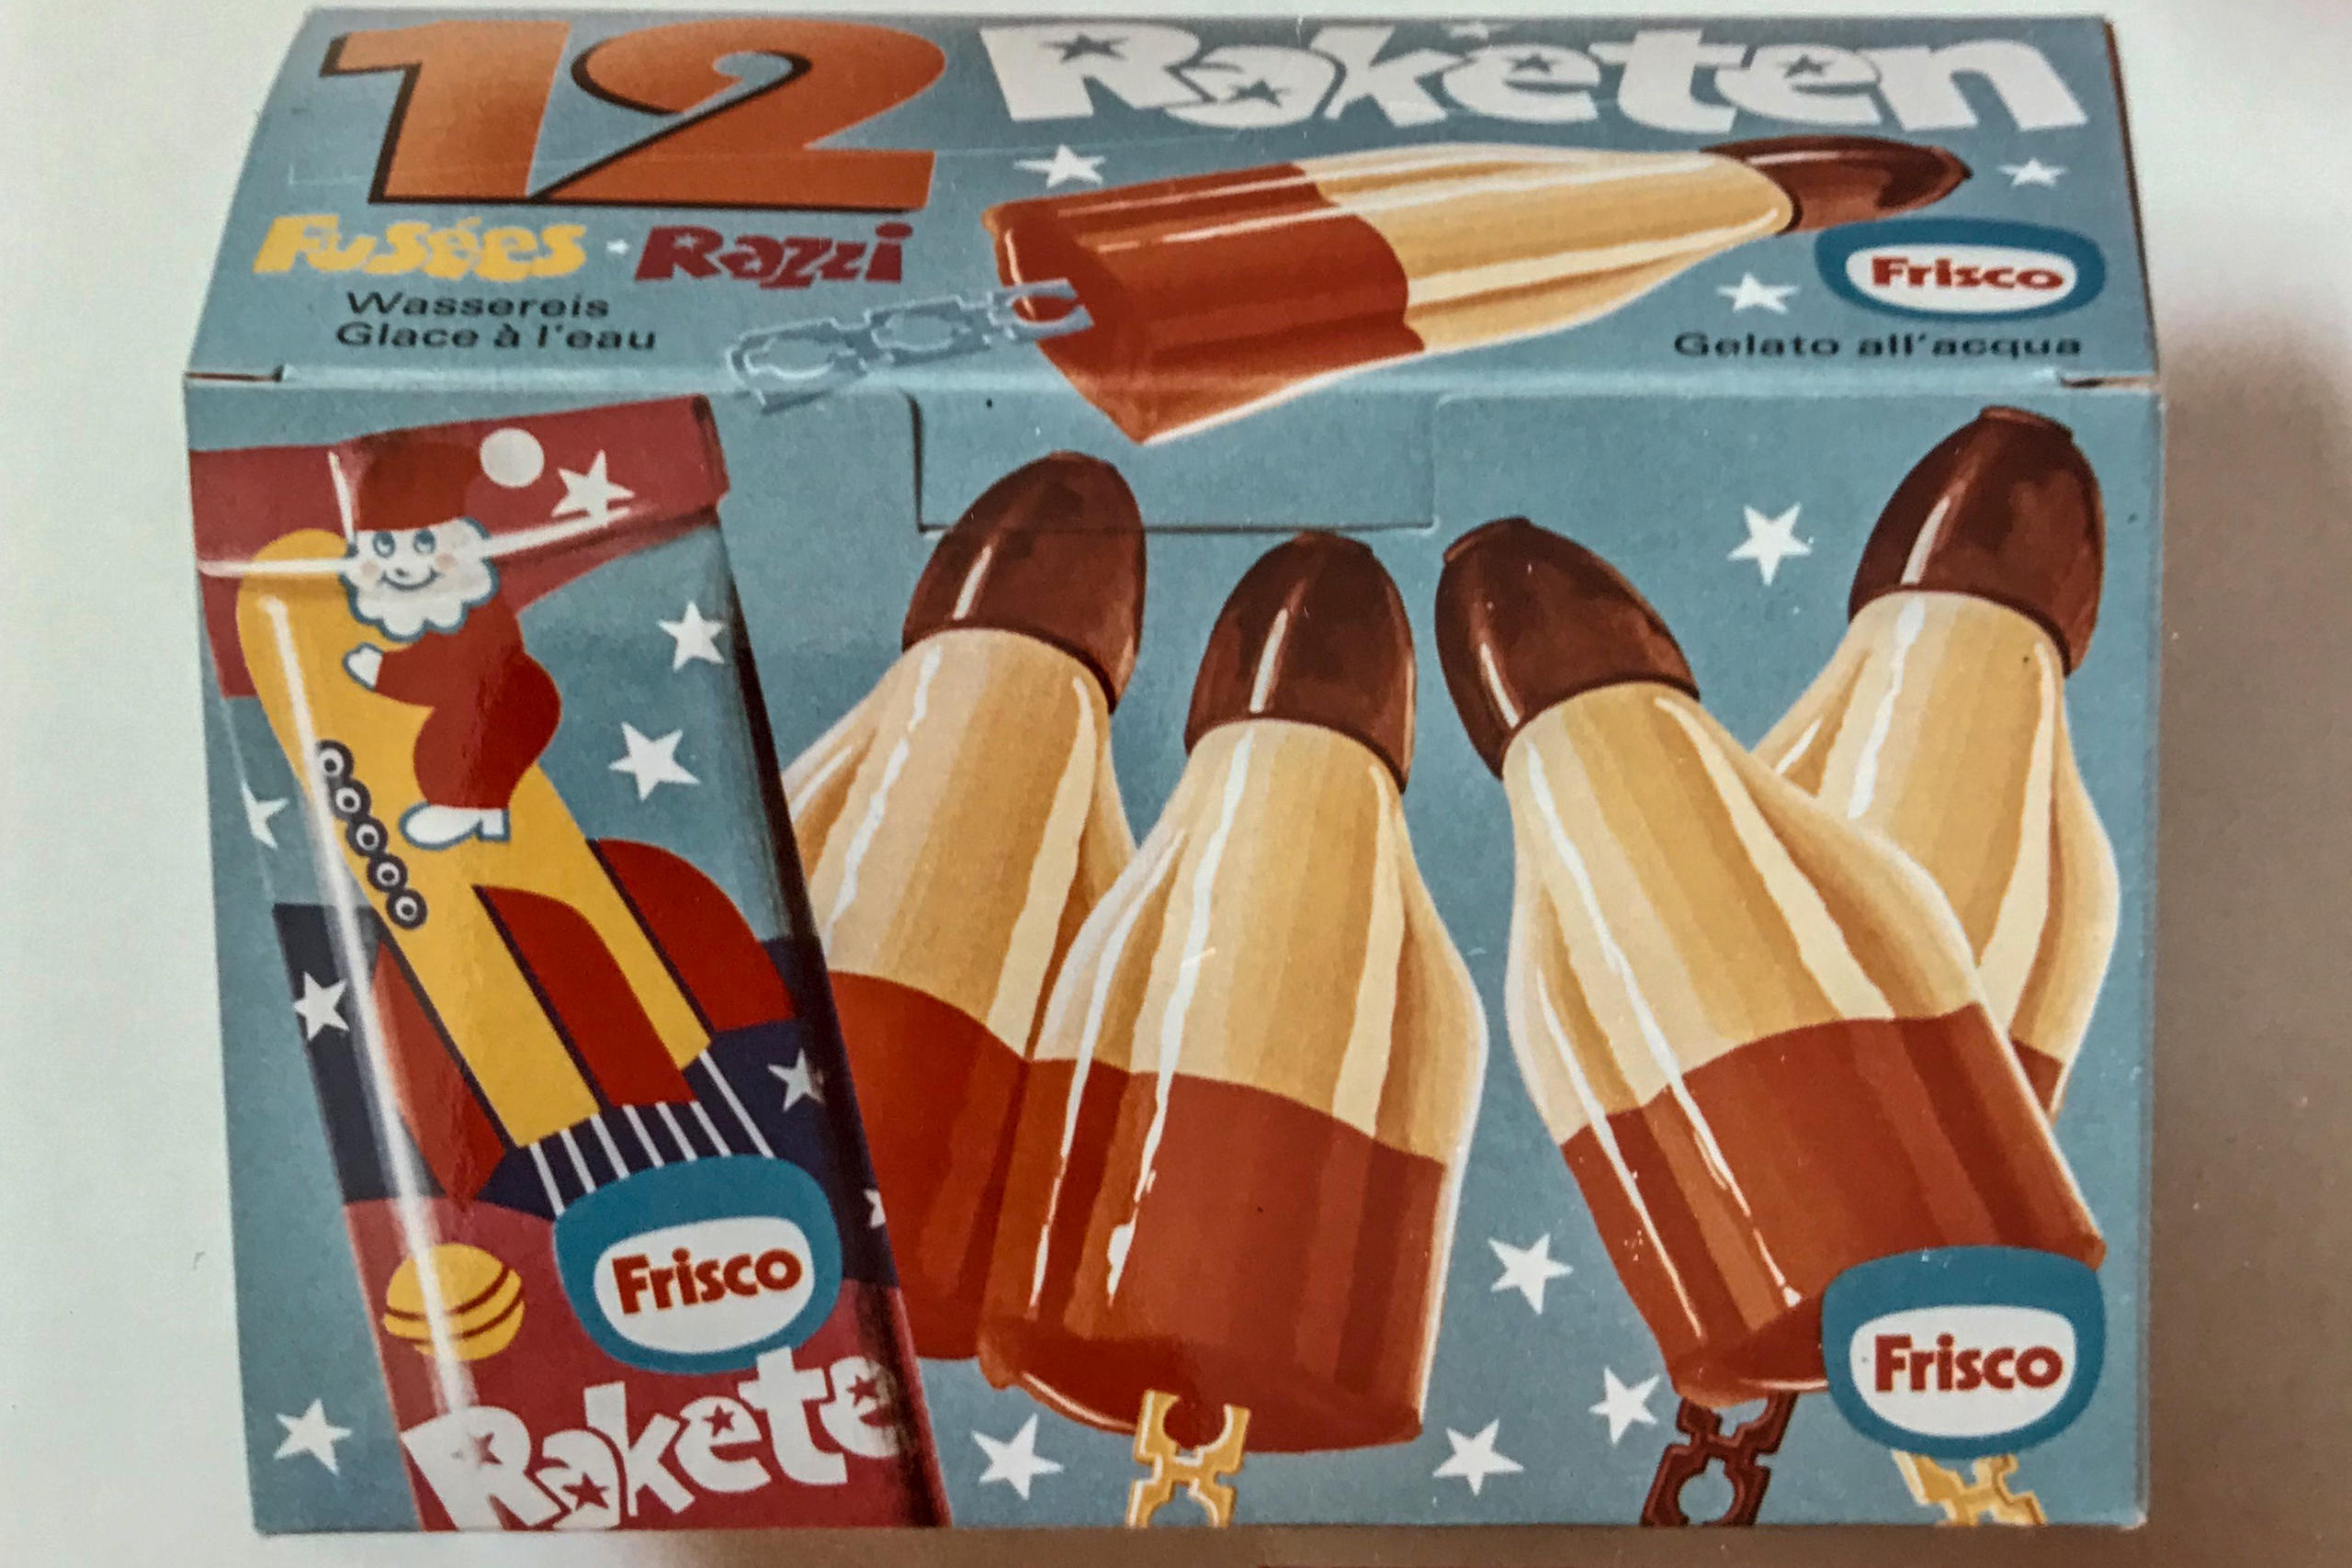 ロケット型アイスが描かれた箱